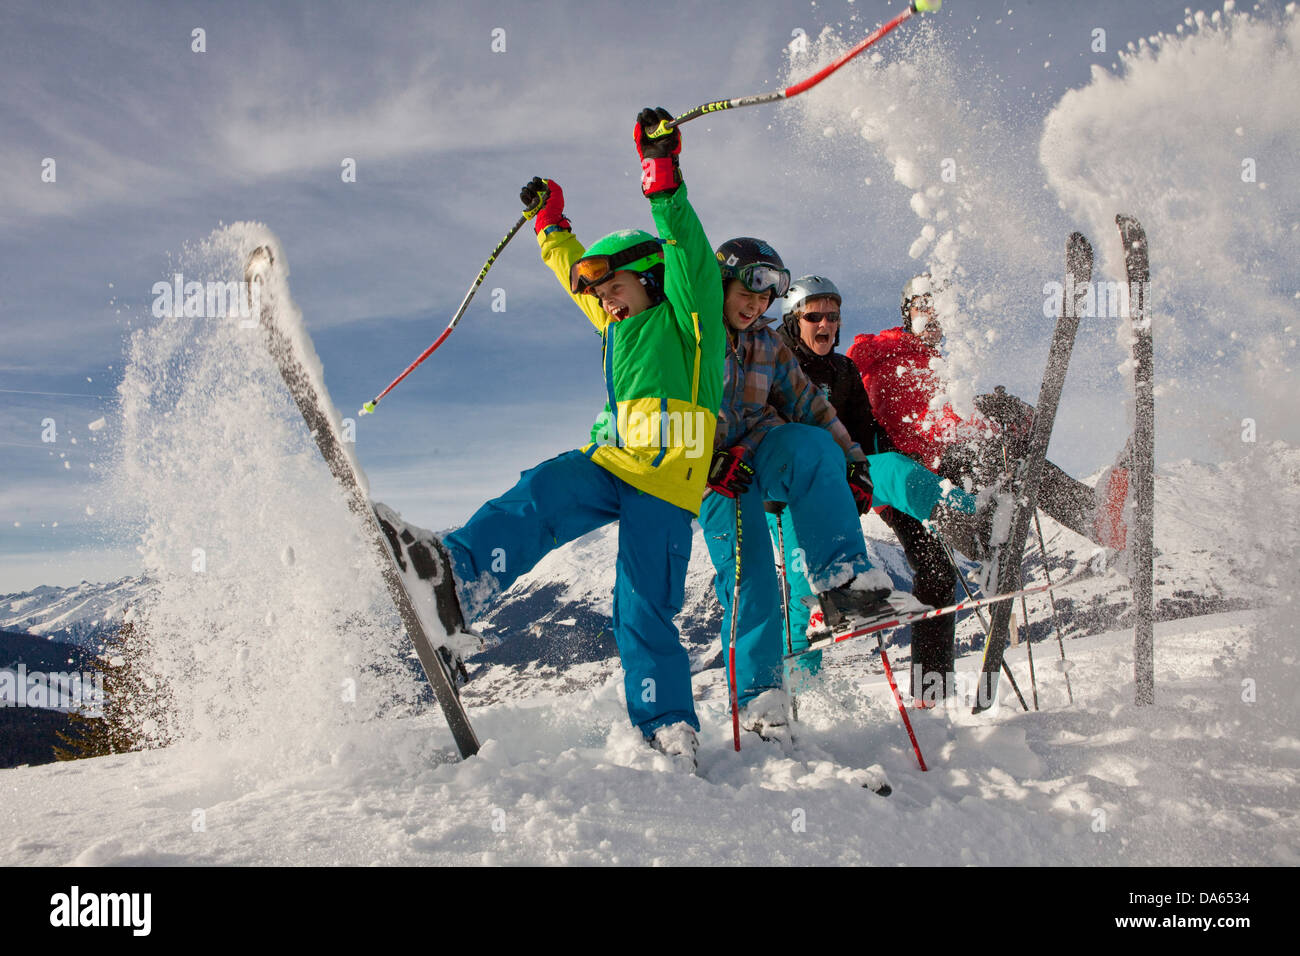 Family, ski chat, Obersaxen, mountain, mountains, ski, skiing, winter sports, Carving, snow, fun, Switzerland, Europe, Stock Photo